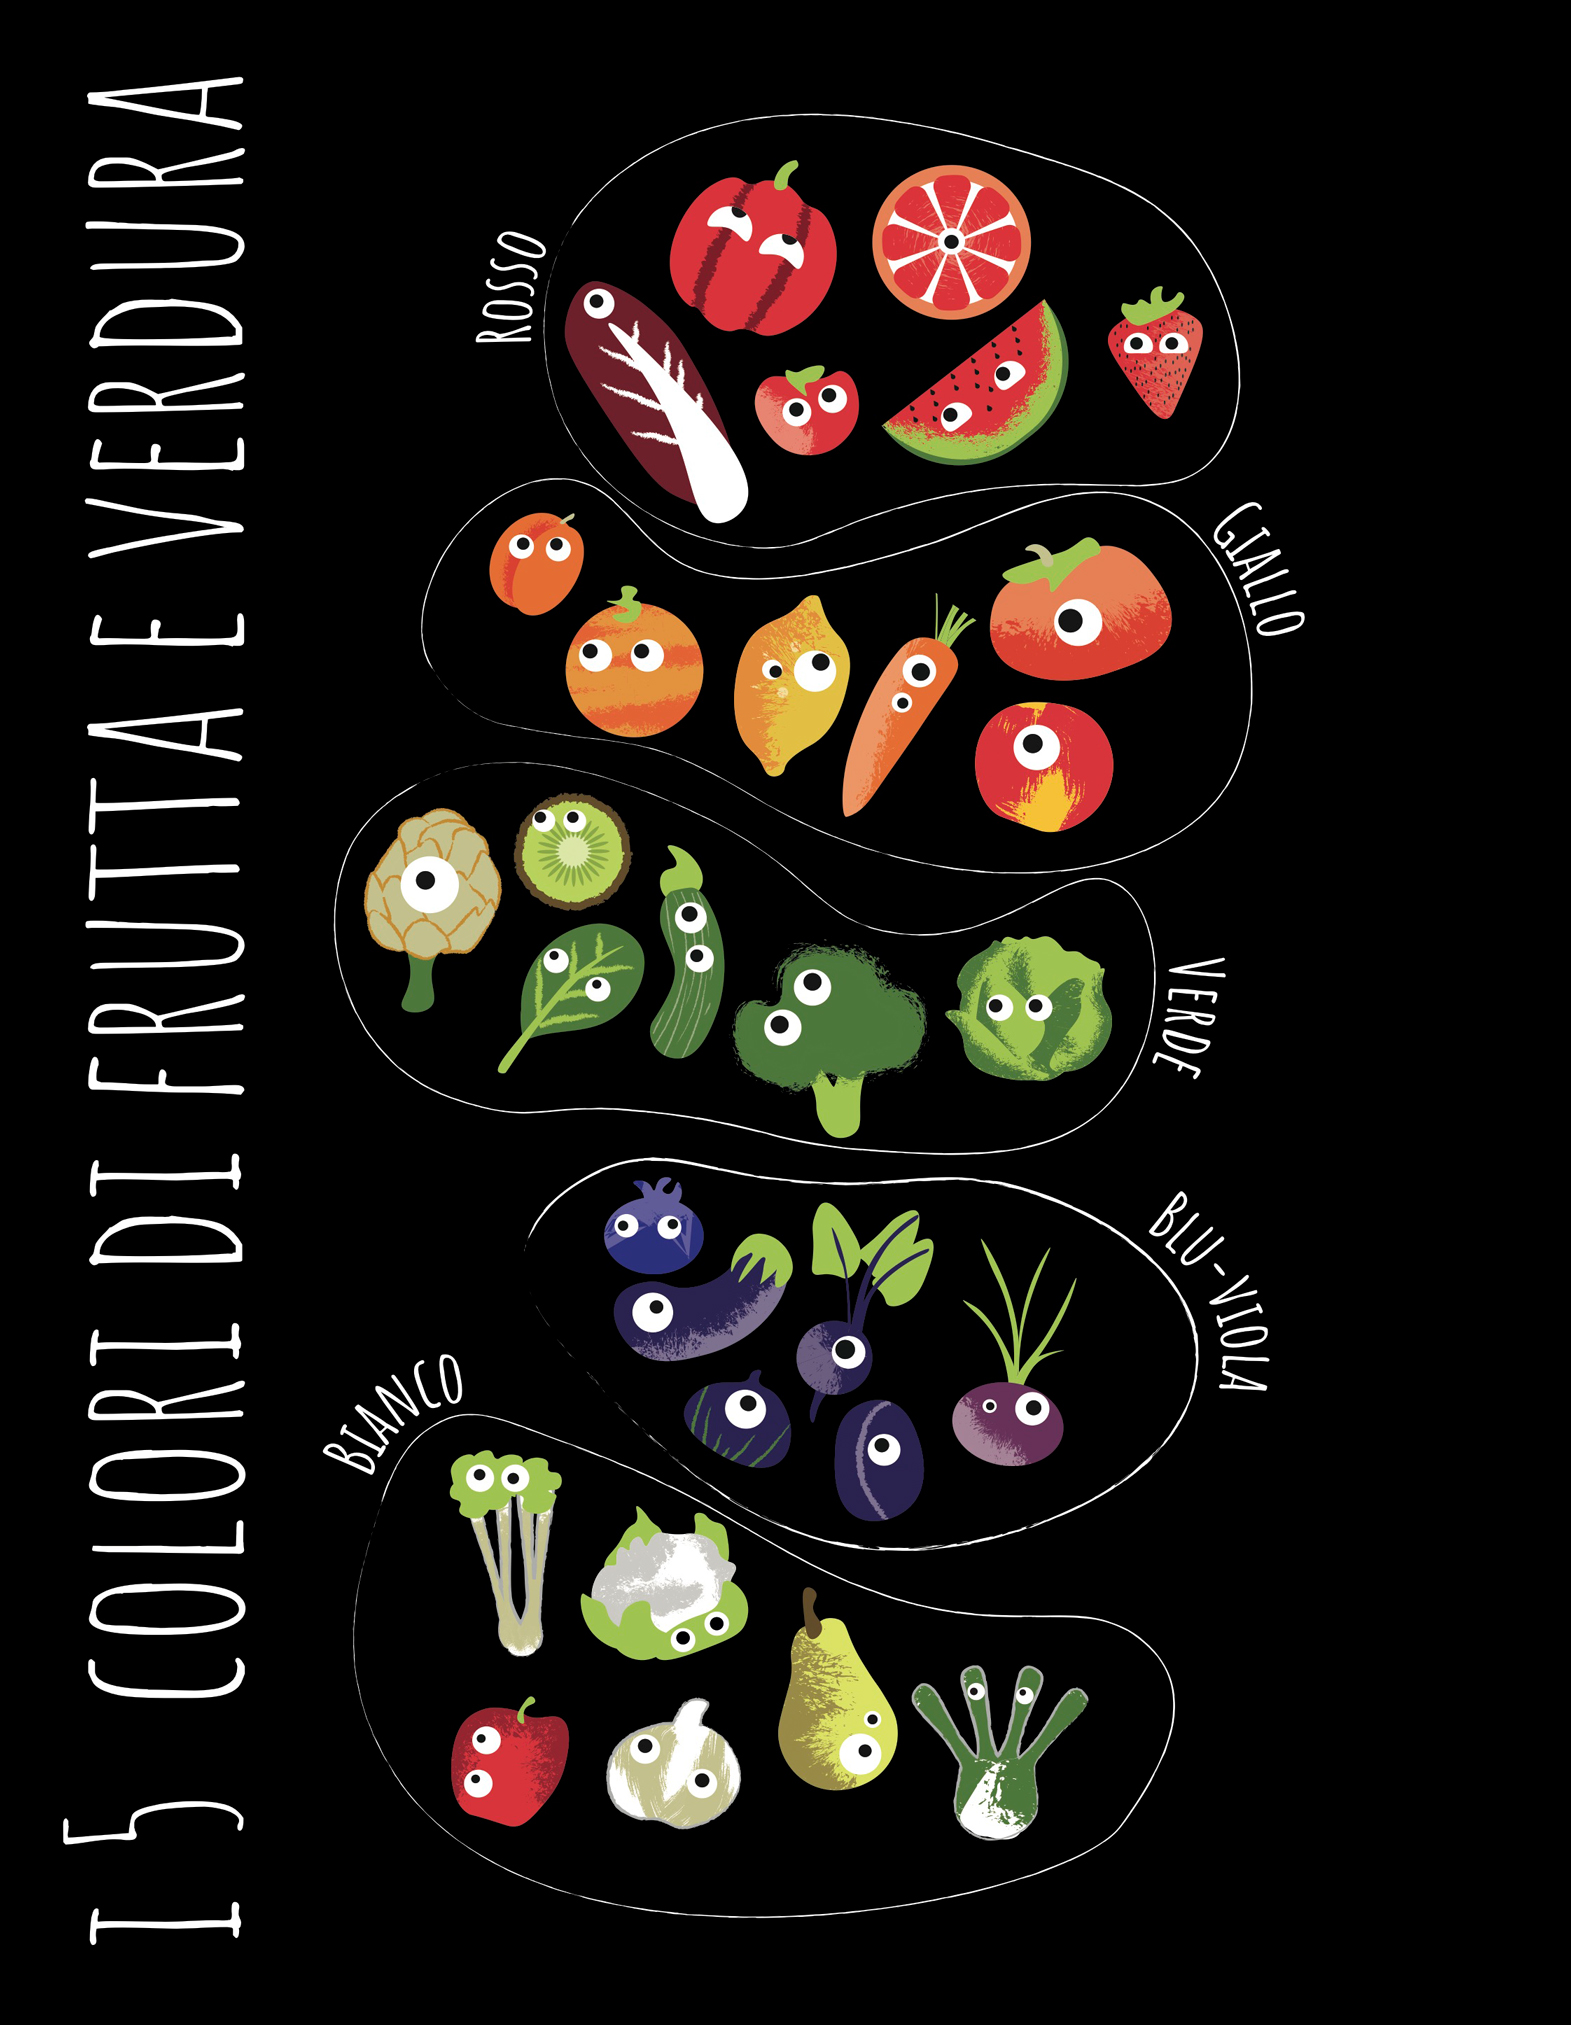 Illustrazioni frutta e verdura progetto "Chooseat"